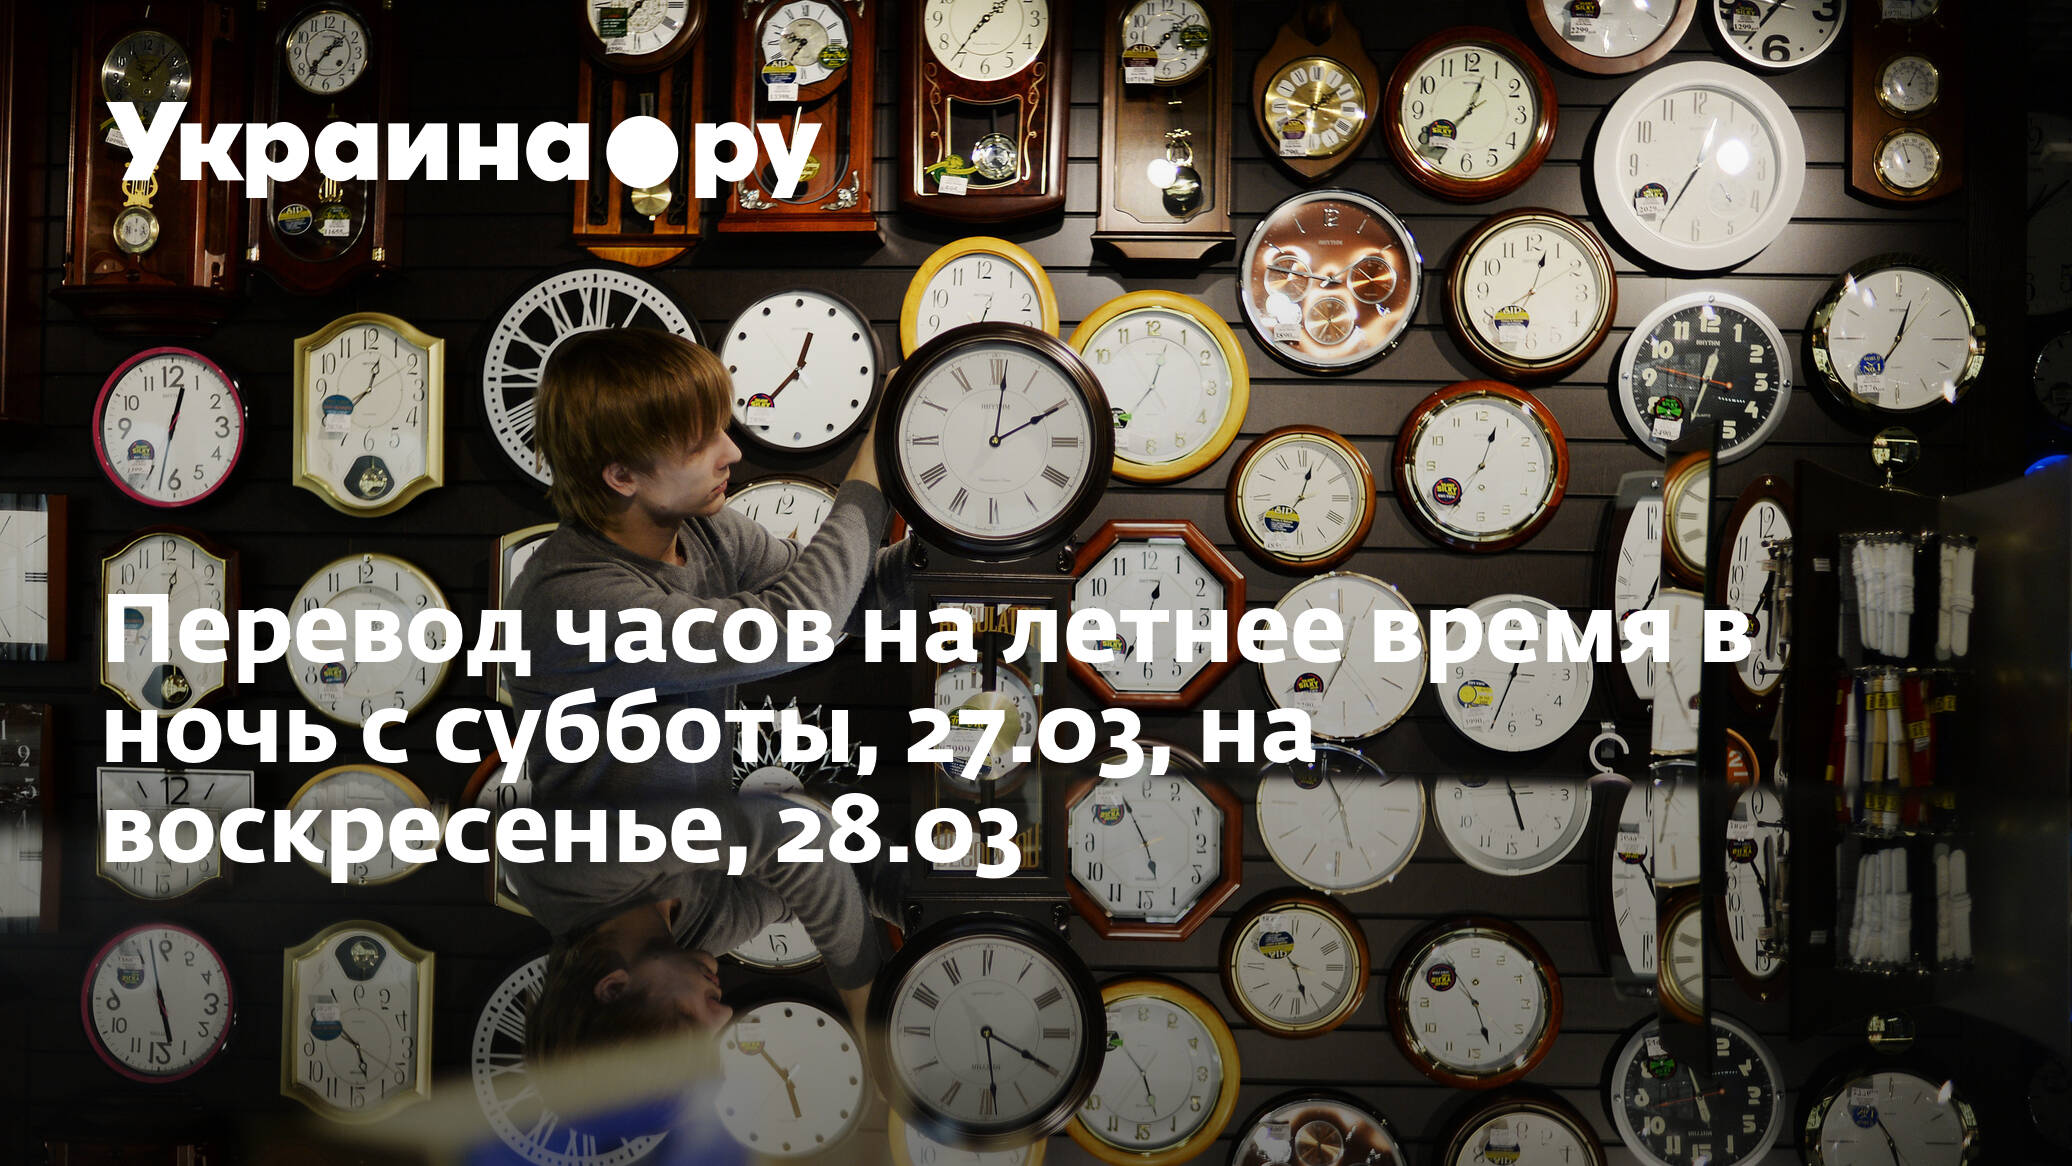 Когда украина переводит часы на летнее время. На Украине часы переводят на летнее время. Какие страны переводят часы на зимнее и летнее время.